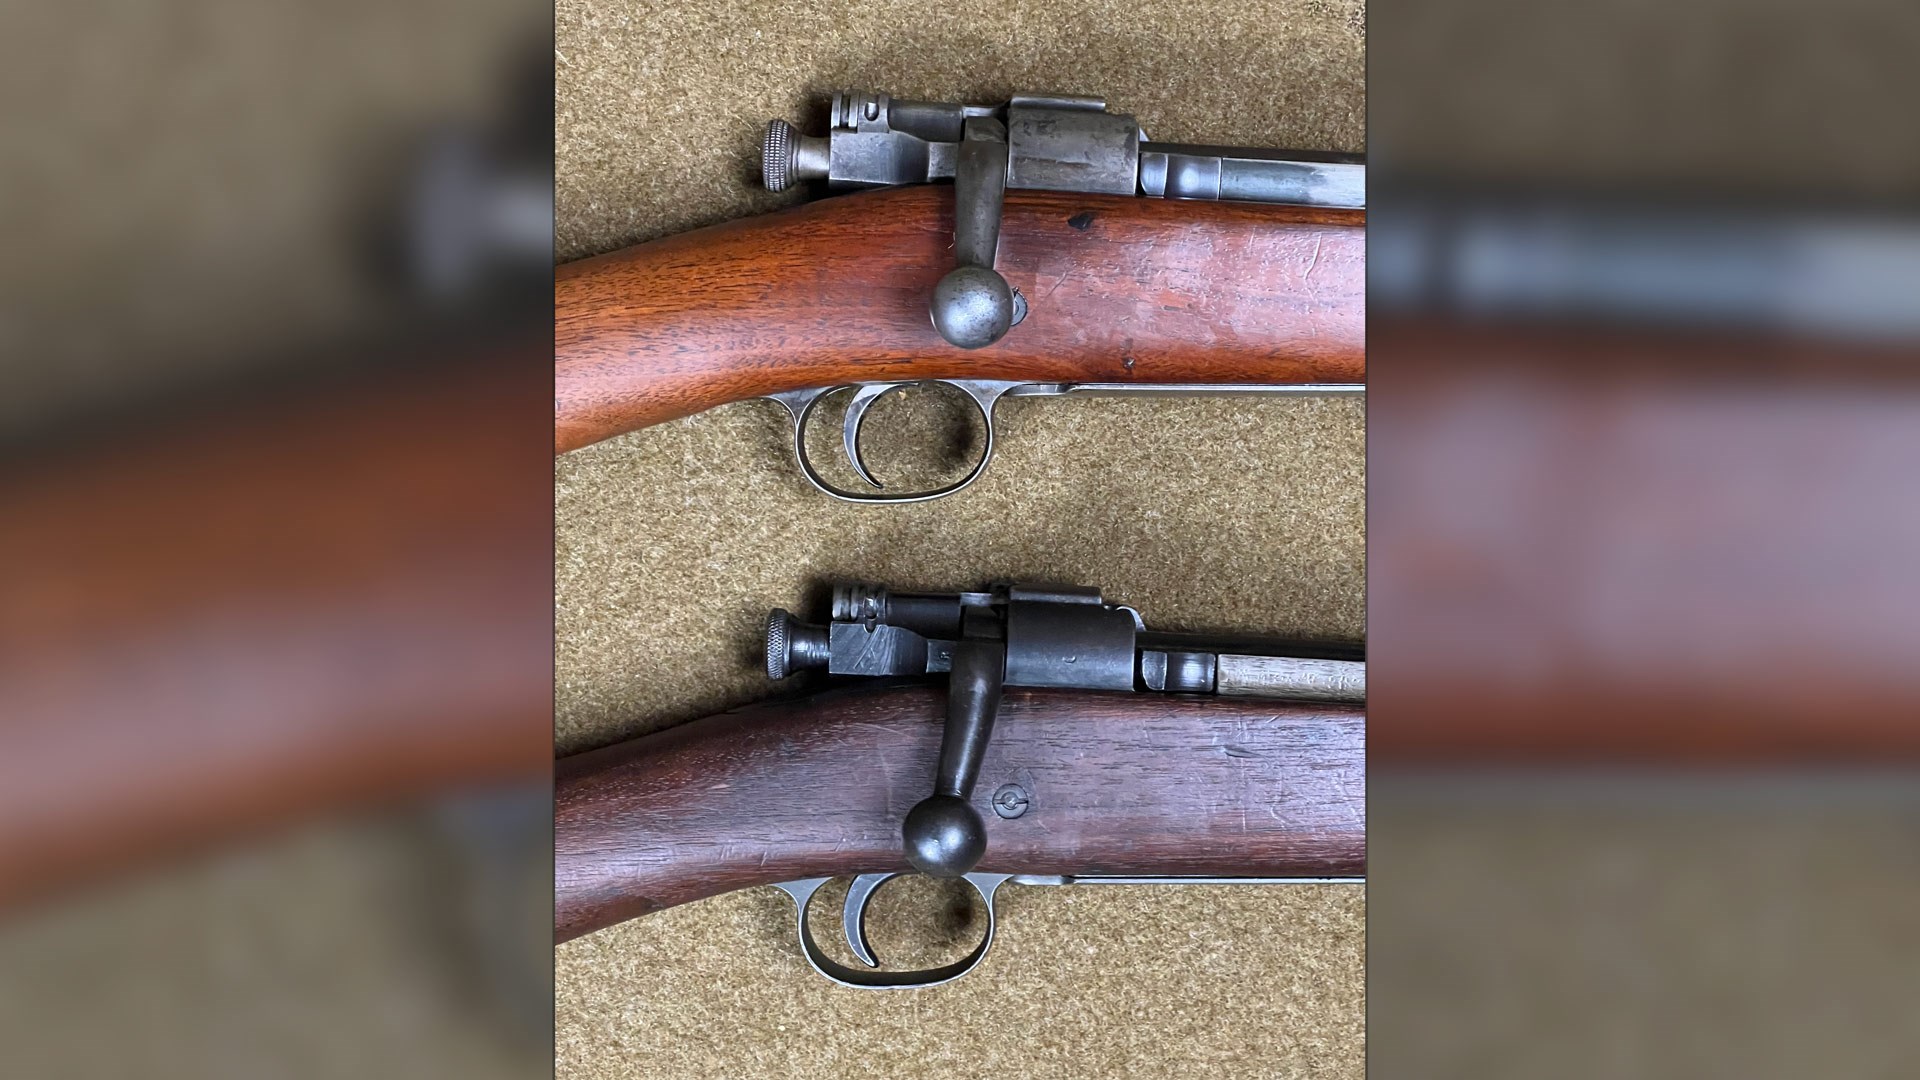 Two military surplus rifles M1903s